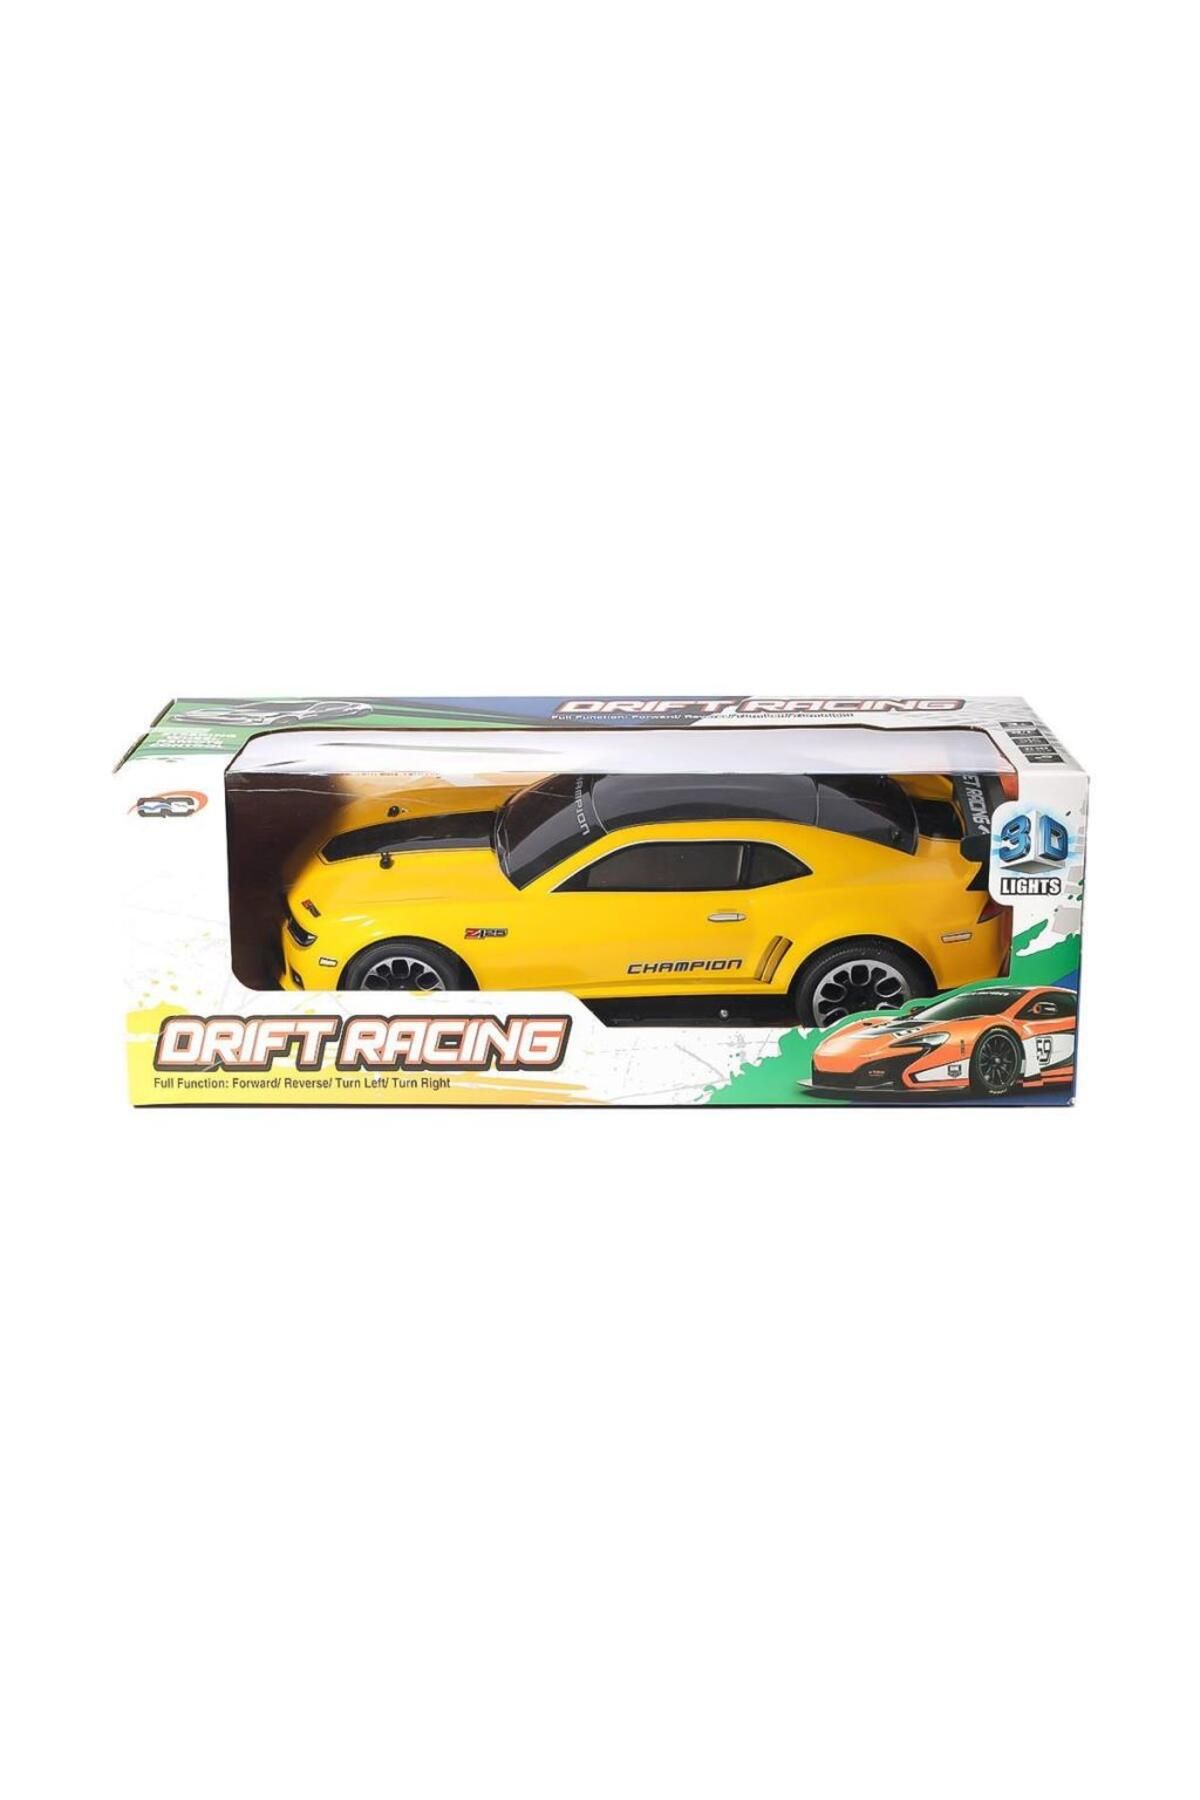 can oyuncak 3700-111A 1 10 Kumandalı Şarjlı Işıklı Drift Racing Araba 41 cm 1:10 -Can